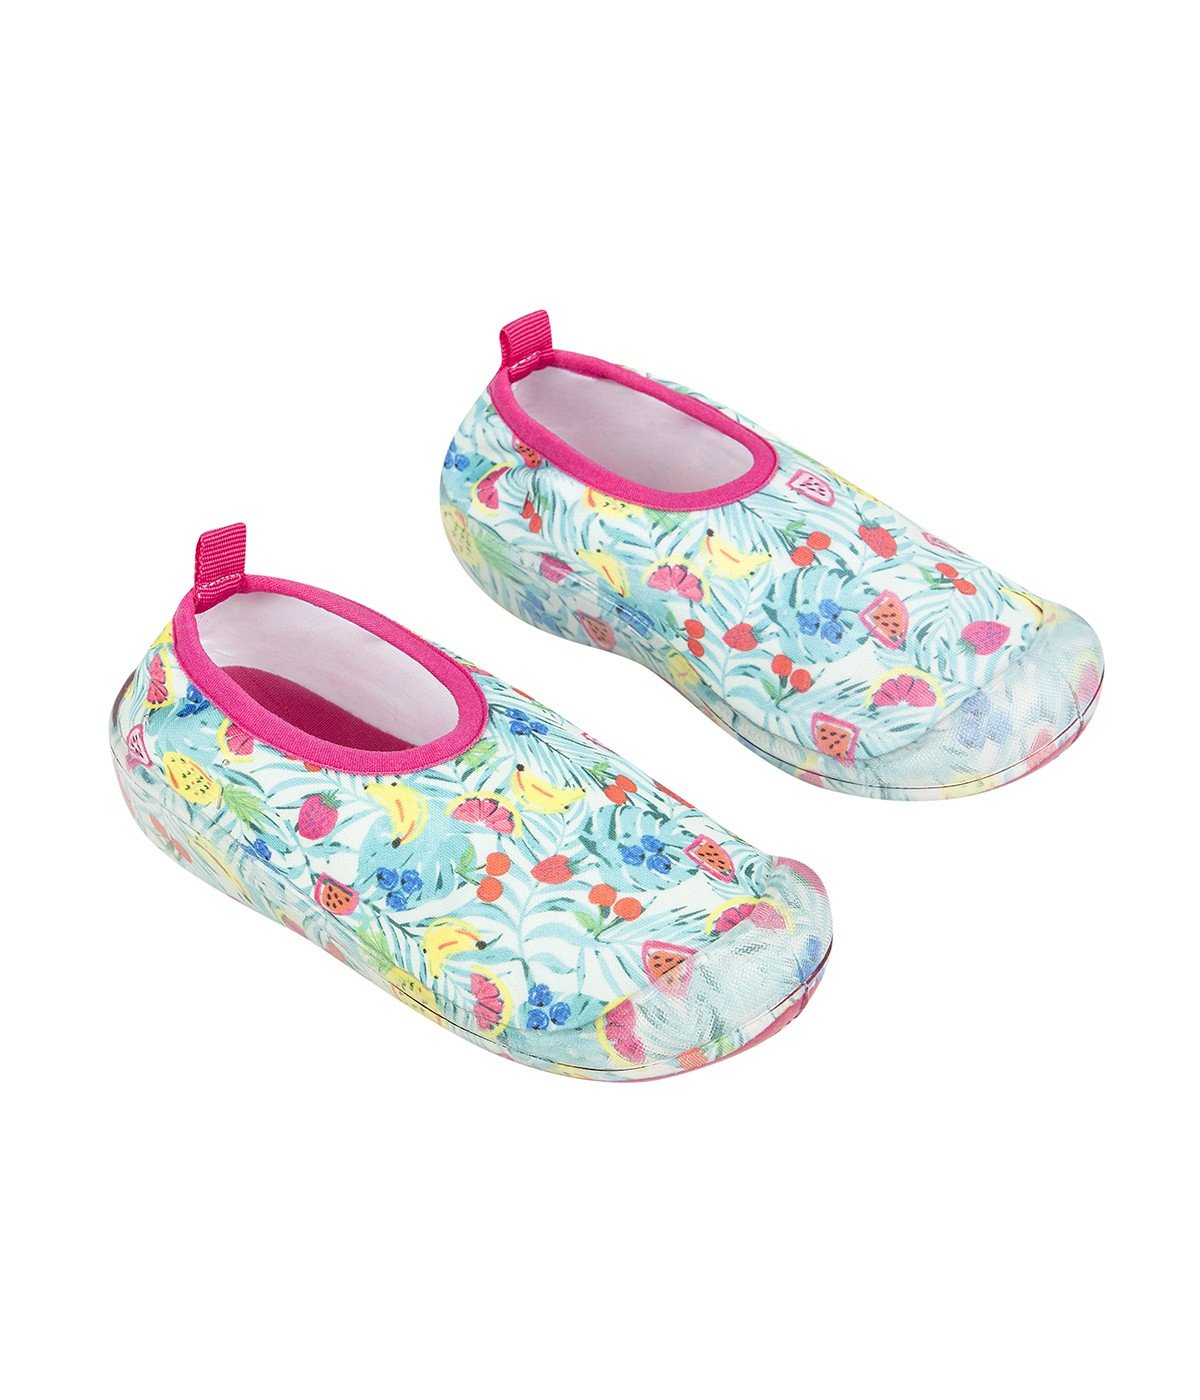 Girl Flower Shoes